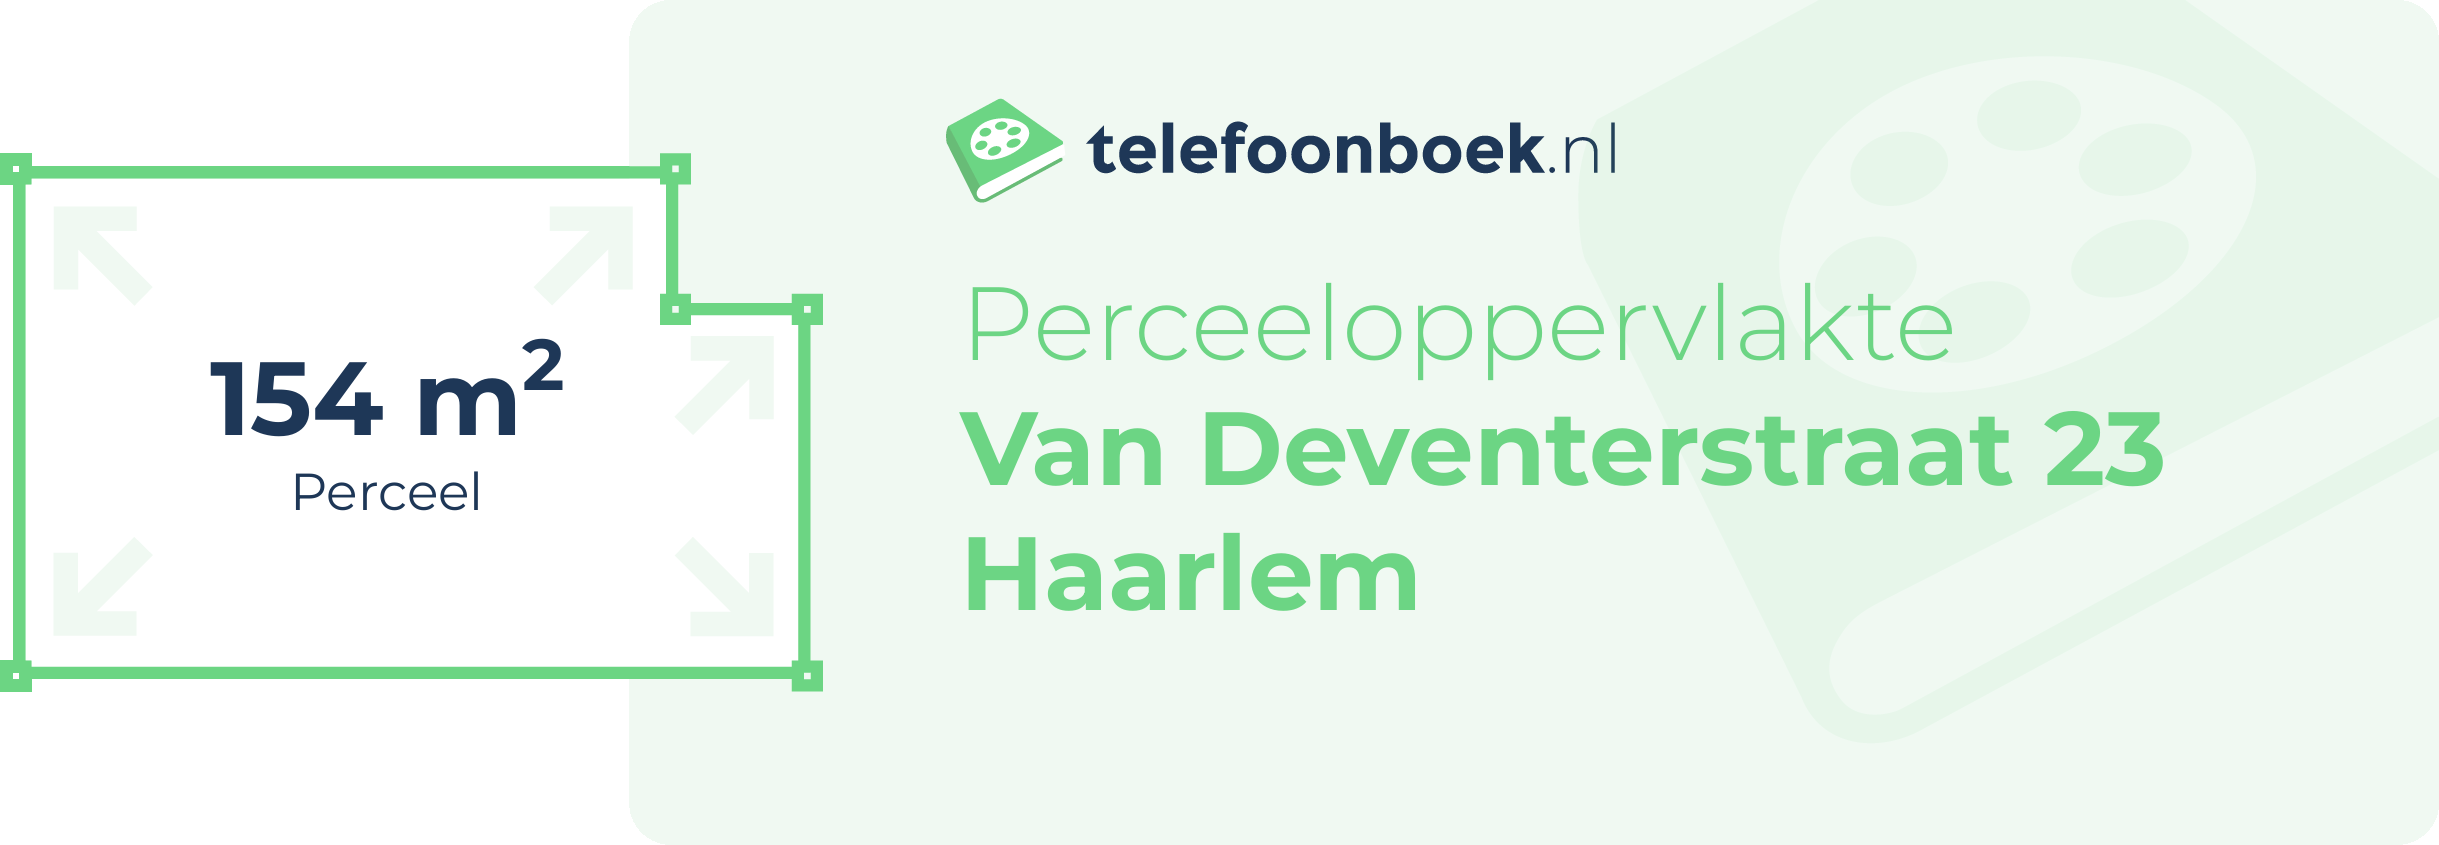 Perceeloppervlakte Van Deventerstraat 23 Haarlem